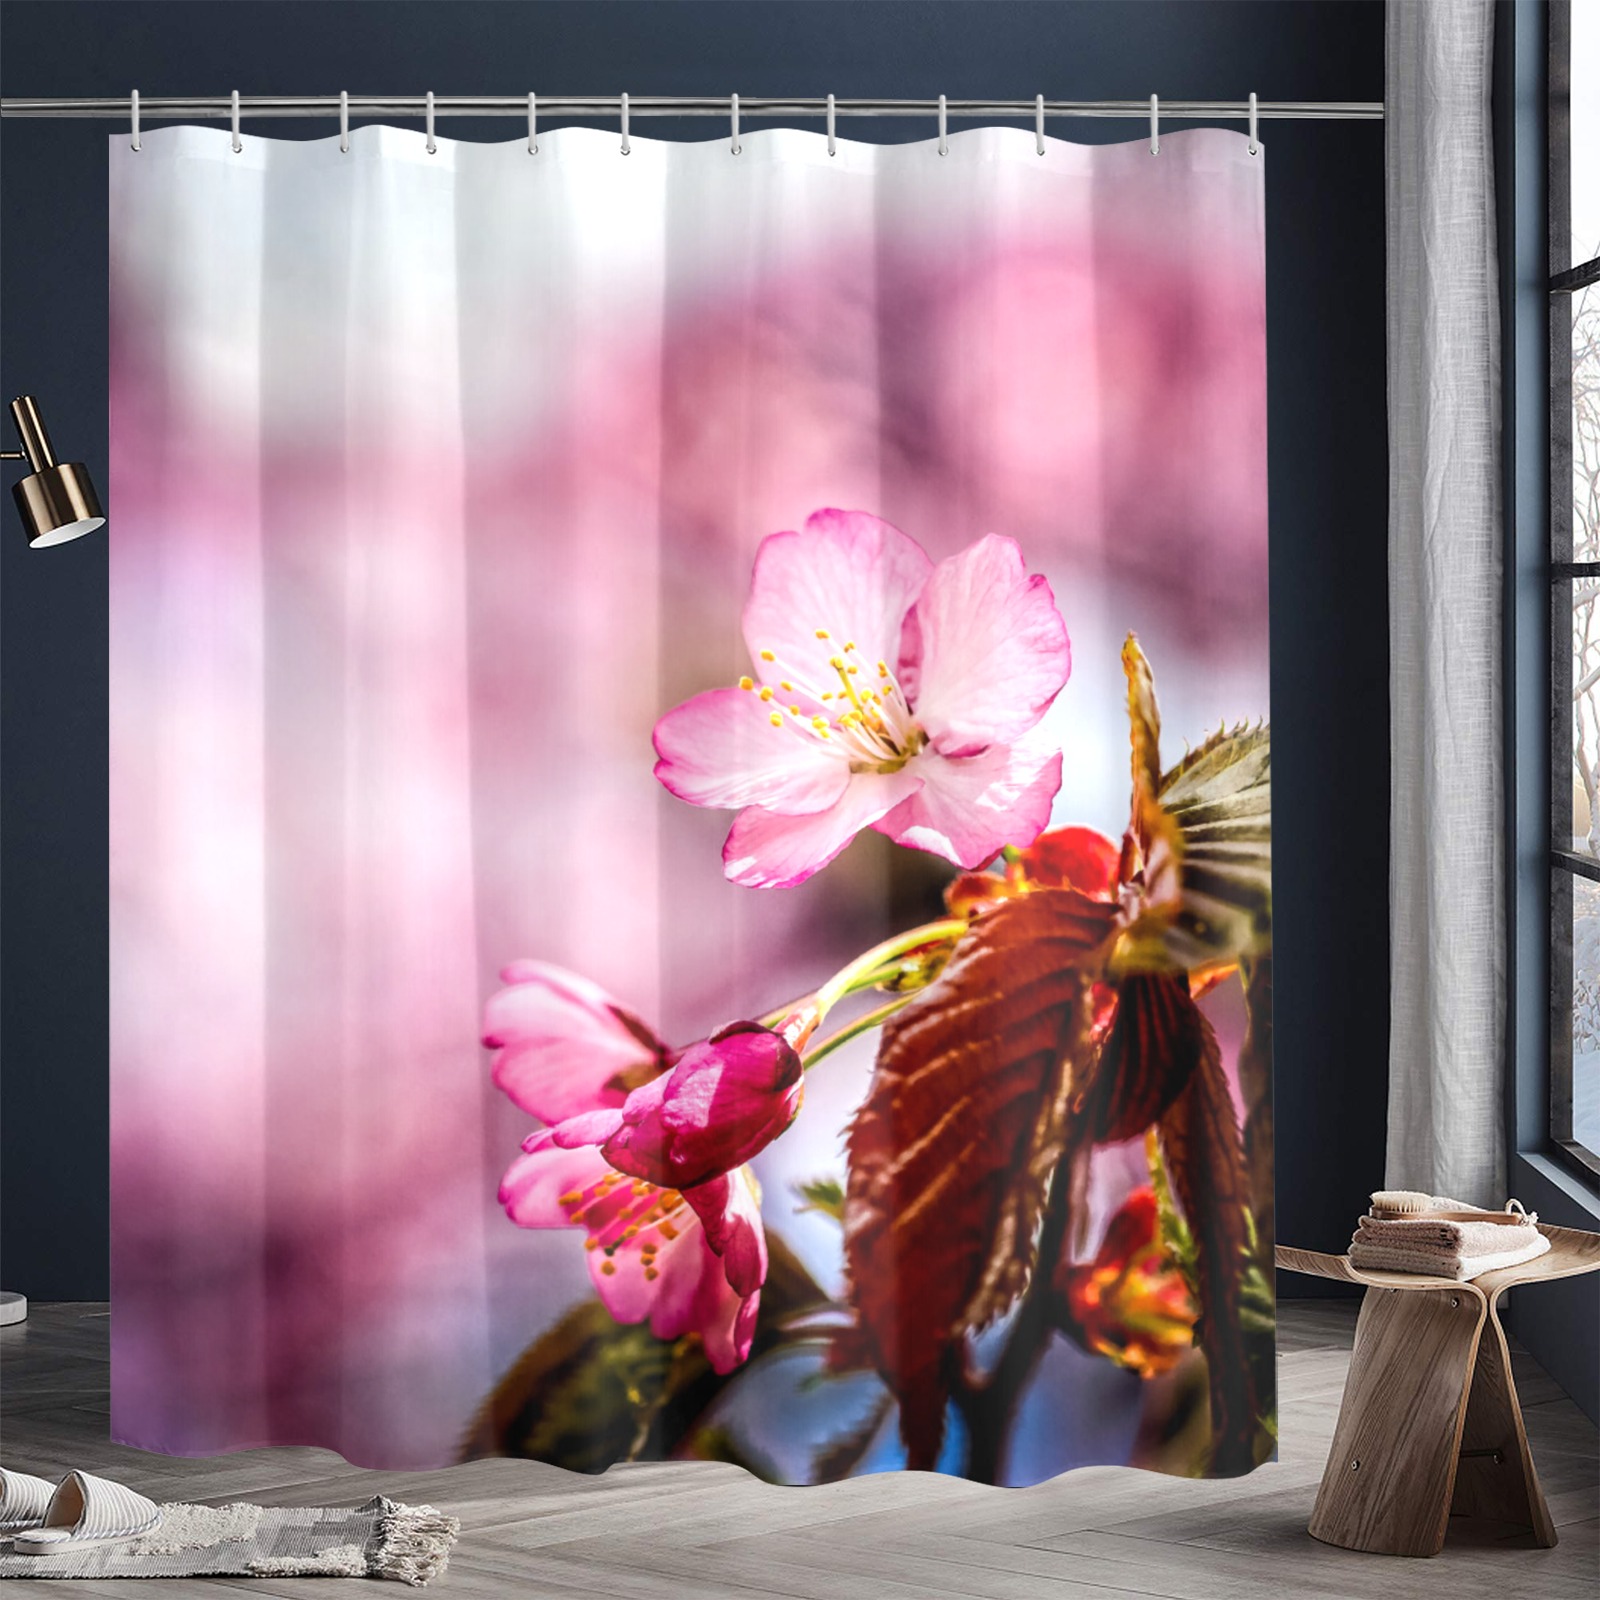 Striking pink sakura cherry flowers, pink mist. Shower Curtain 72"x84"